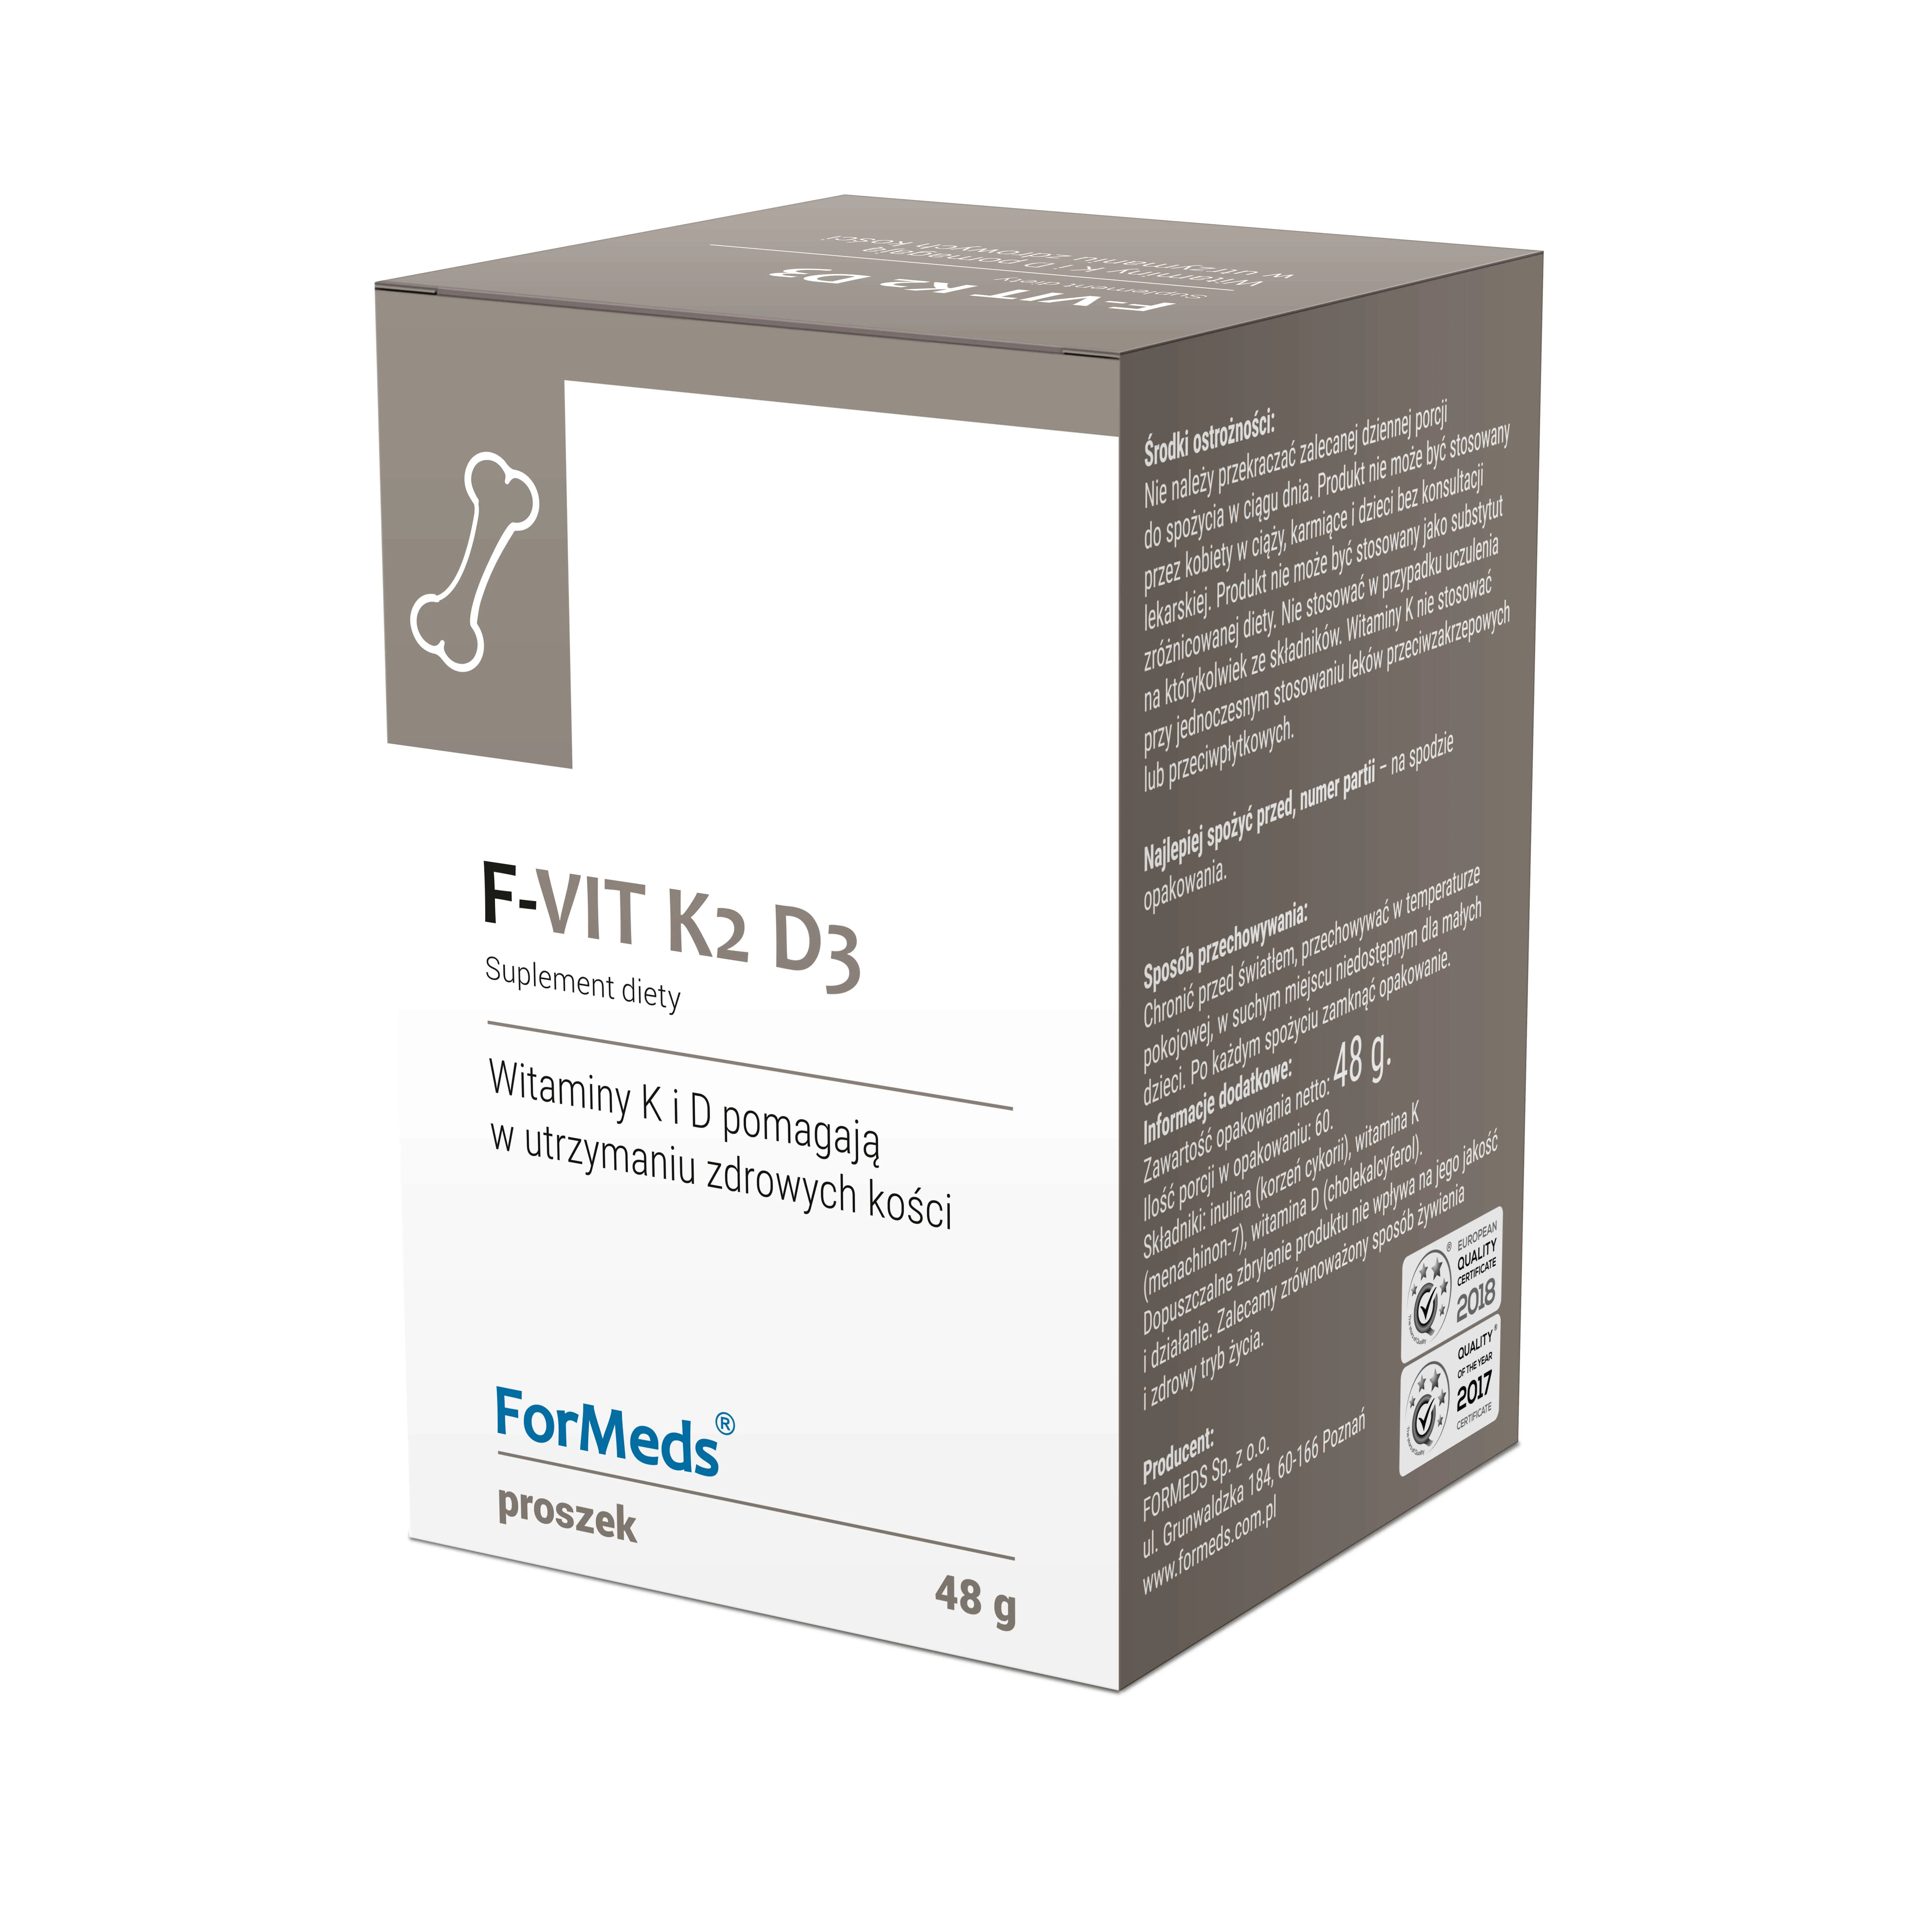 ForMeds F-VIT K2-D3, suplement diety, 48 g